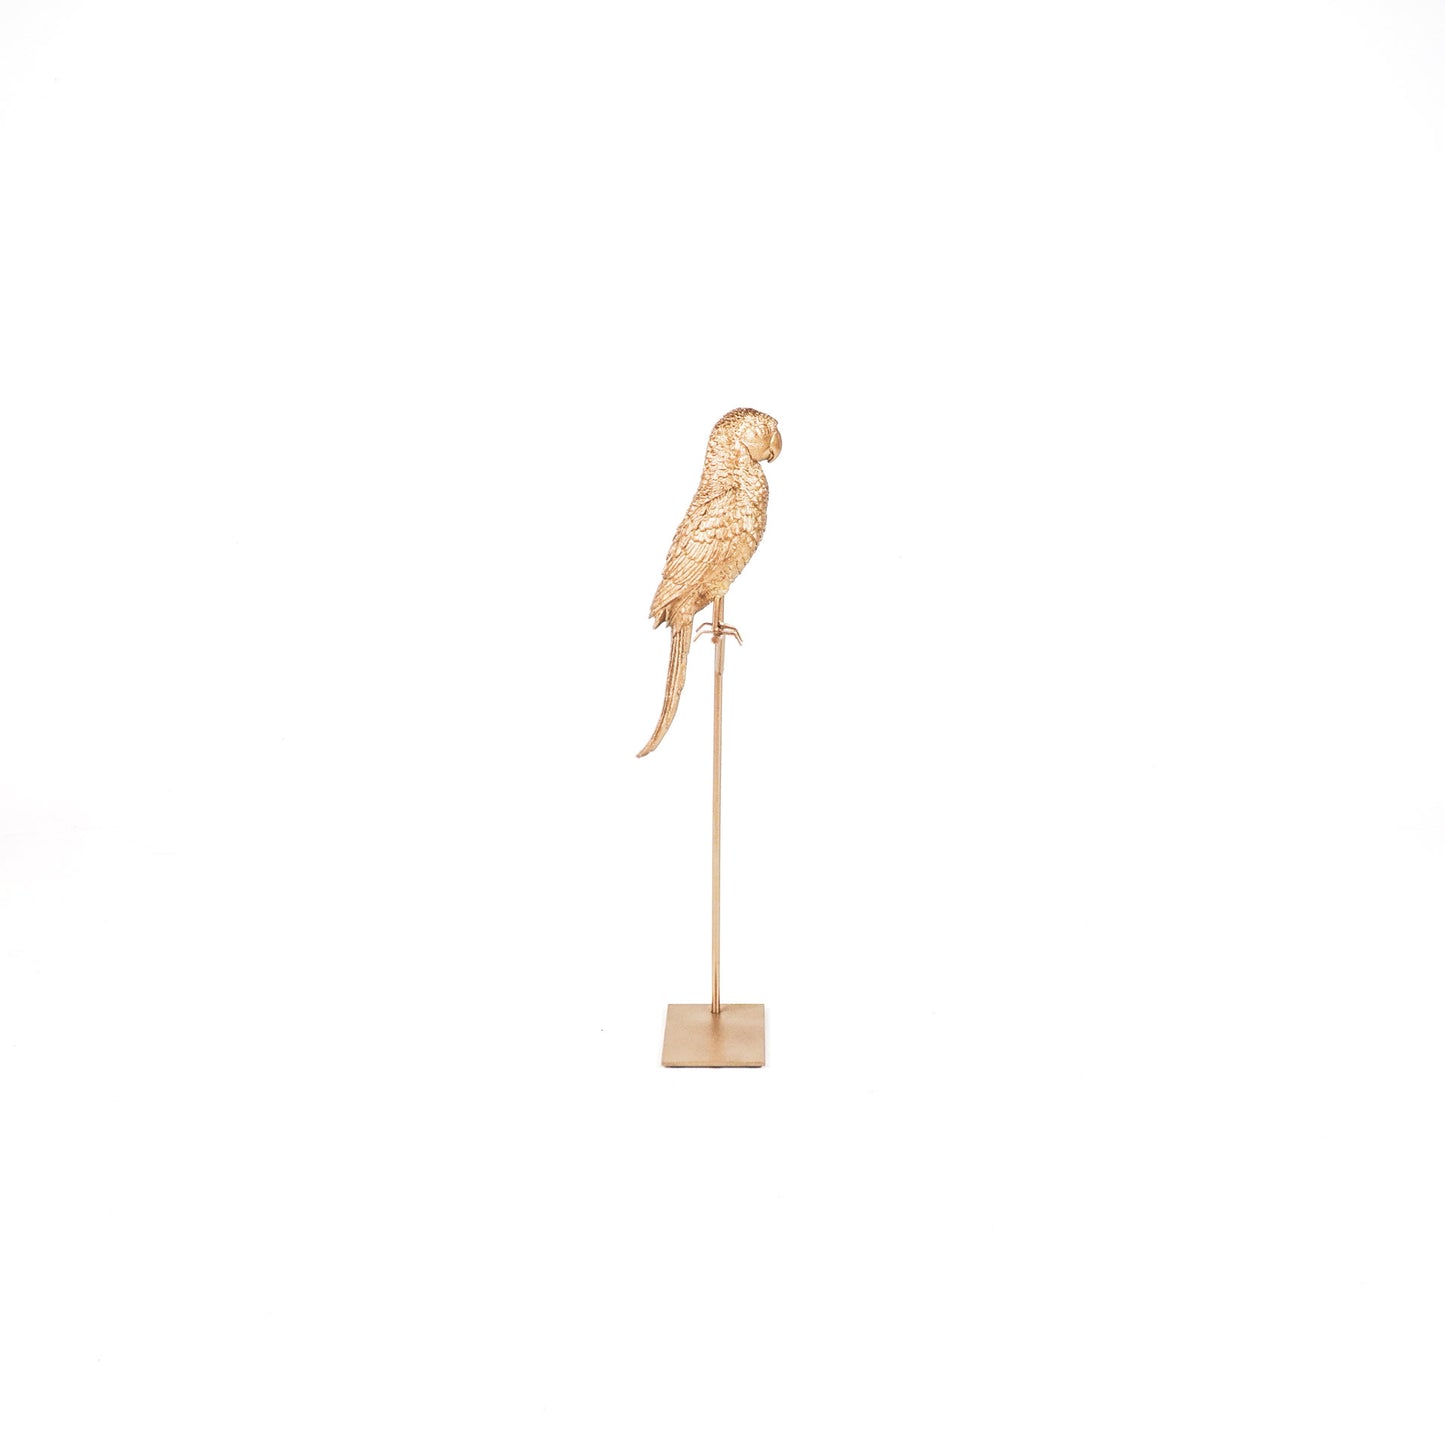 HV Parrot on a Stick- Gold 8.5x11x44 cm